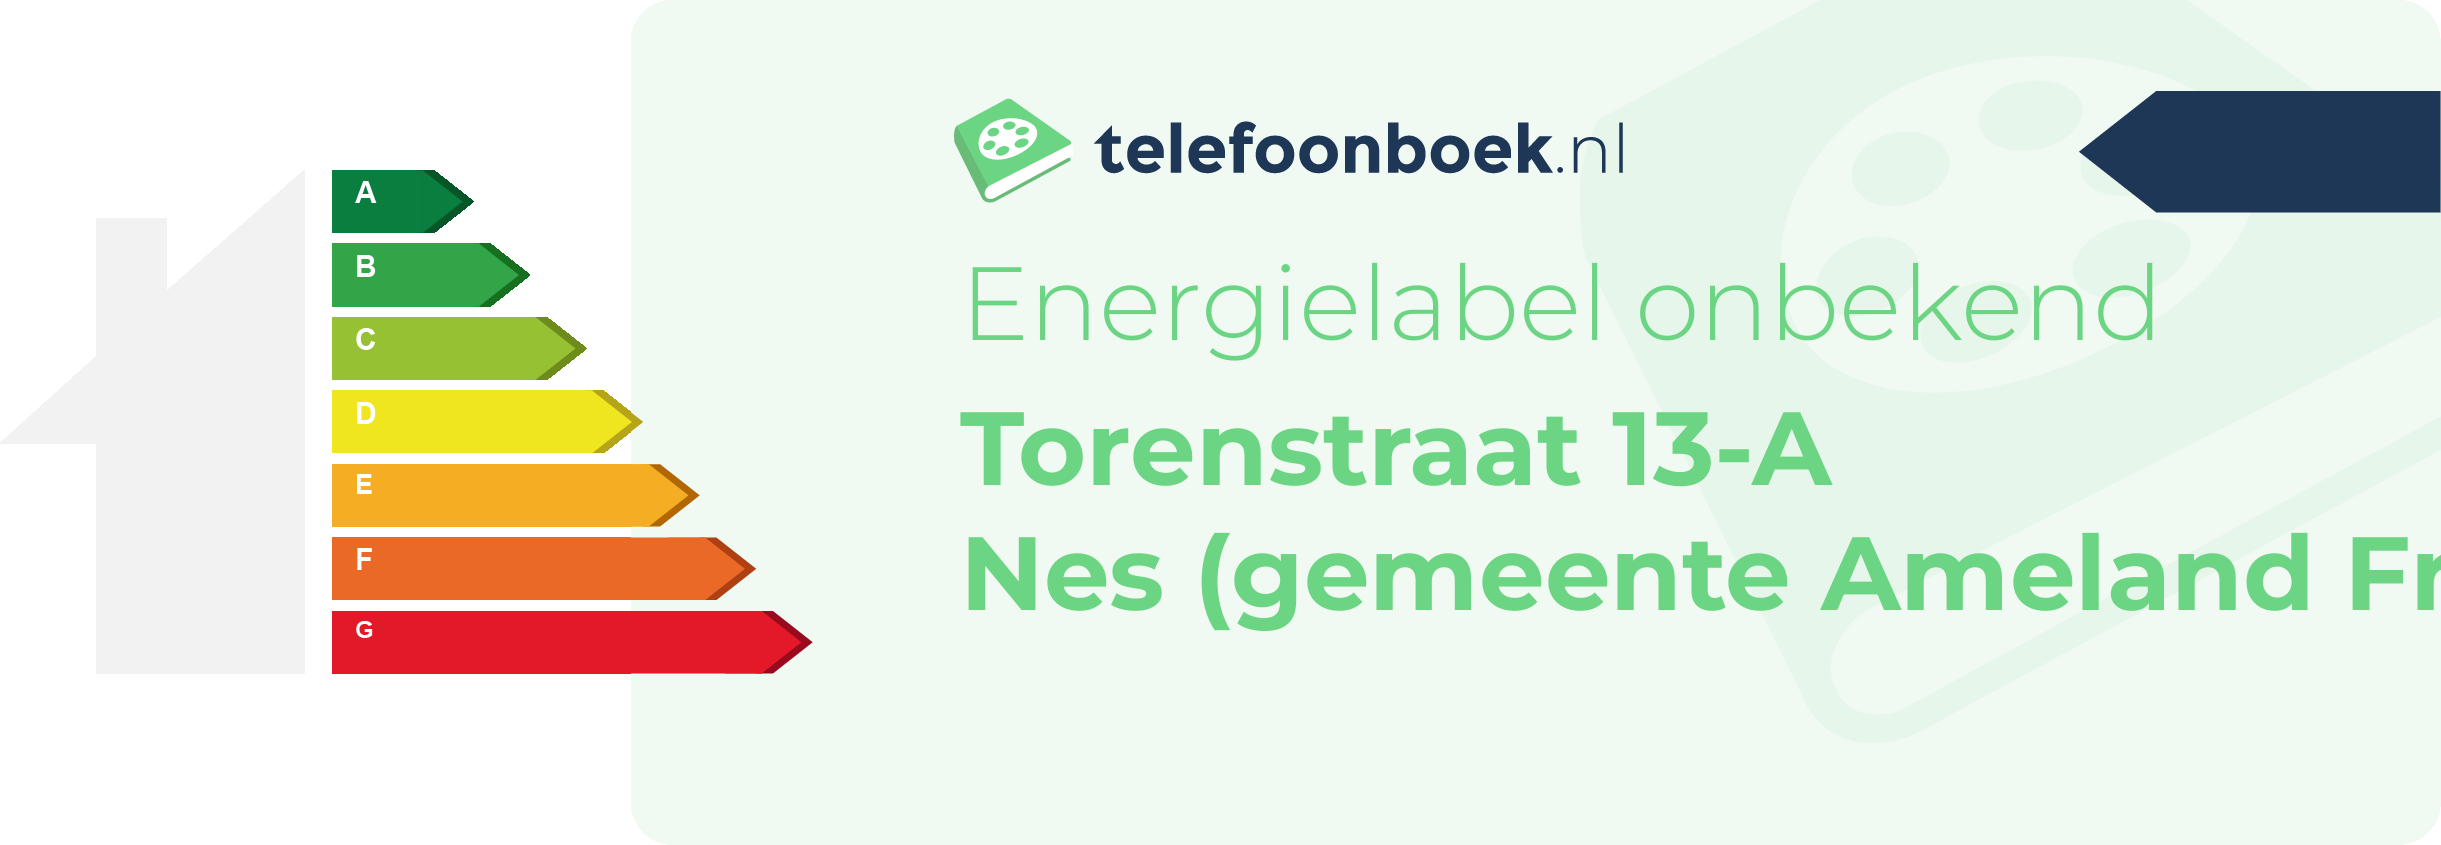 Energielabel Torenstraat 13-A Nes (gemeente Ameland Friesland)